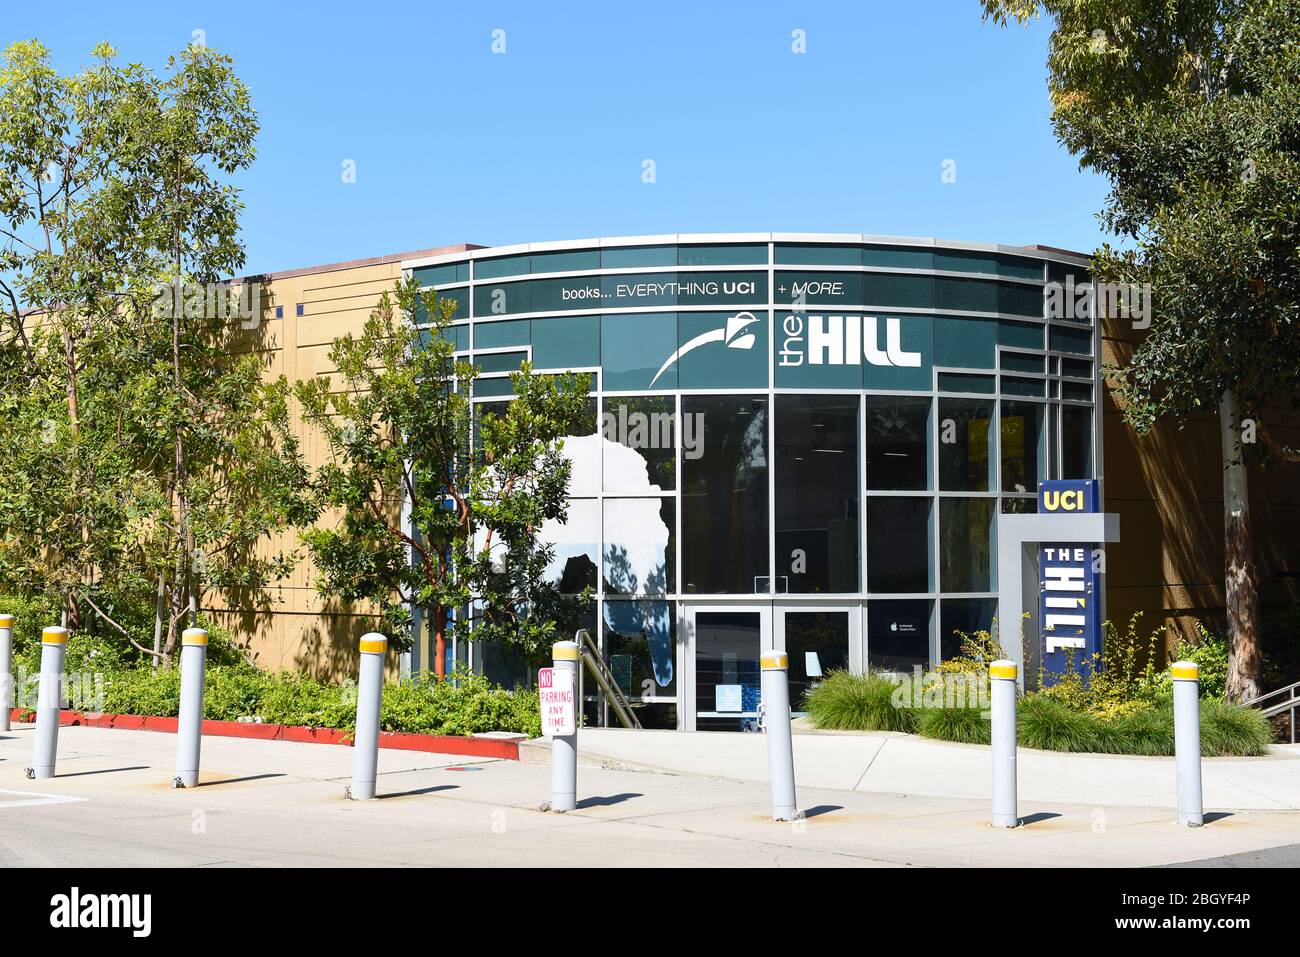 IRVINE, CALIFORNIE - 22 AVRIL 2020: La colline de l'Université de Californie Irvine, UCI, est l'avant-poste pour les livres, les collations, les fournitures scolaires, et le scho Banque D'Images